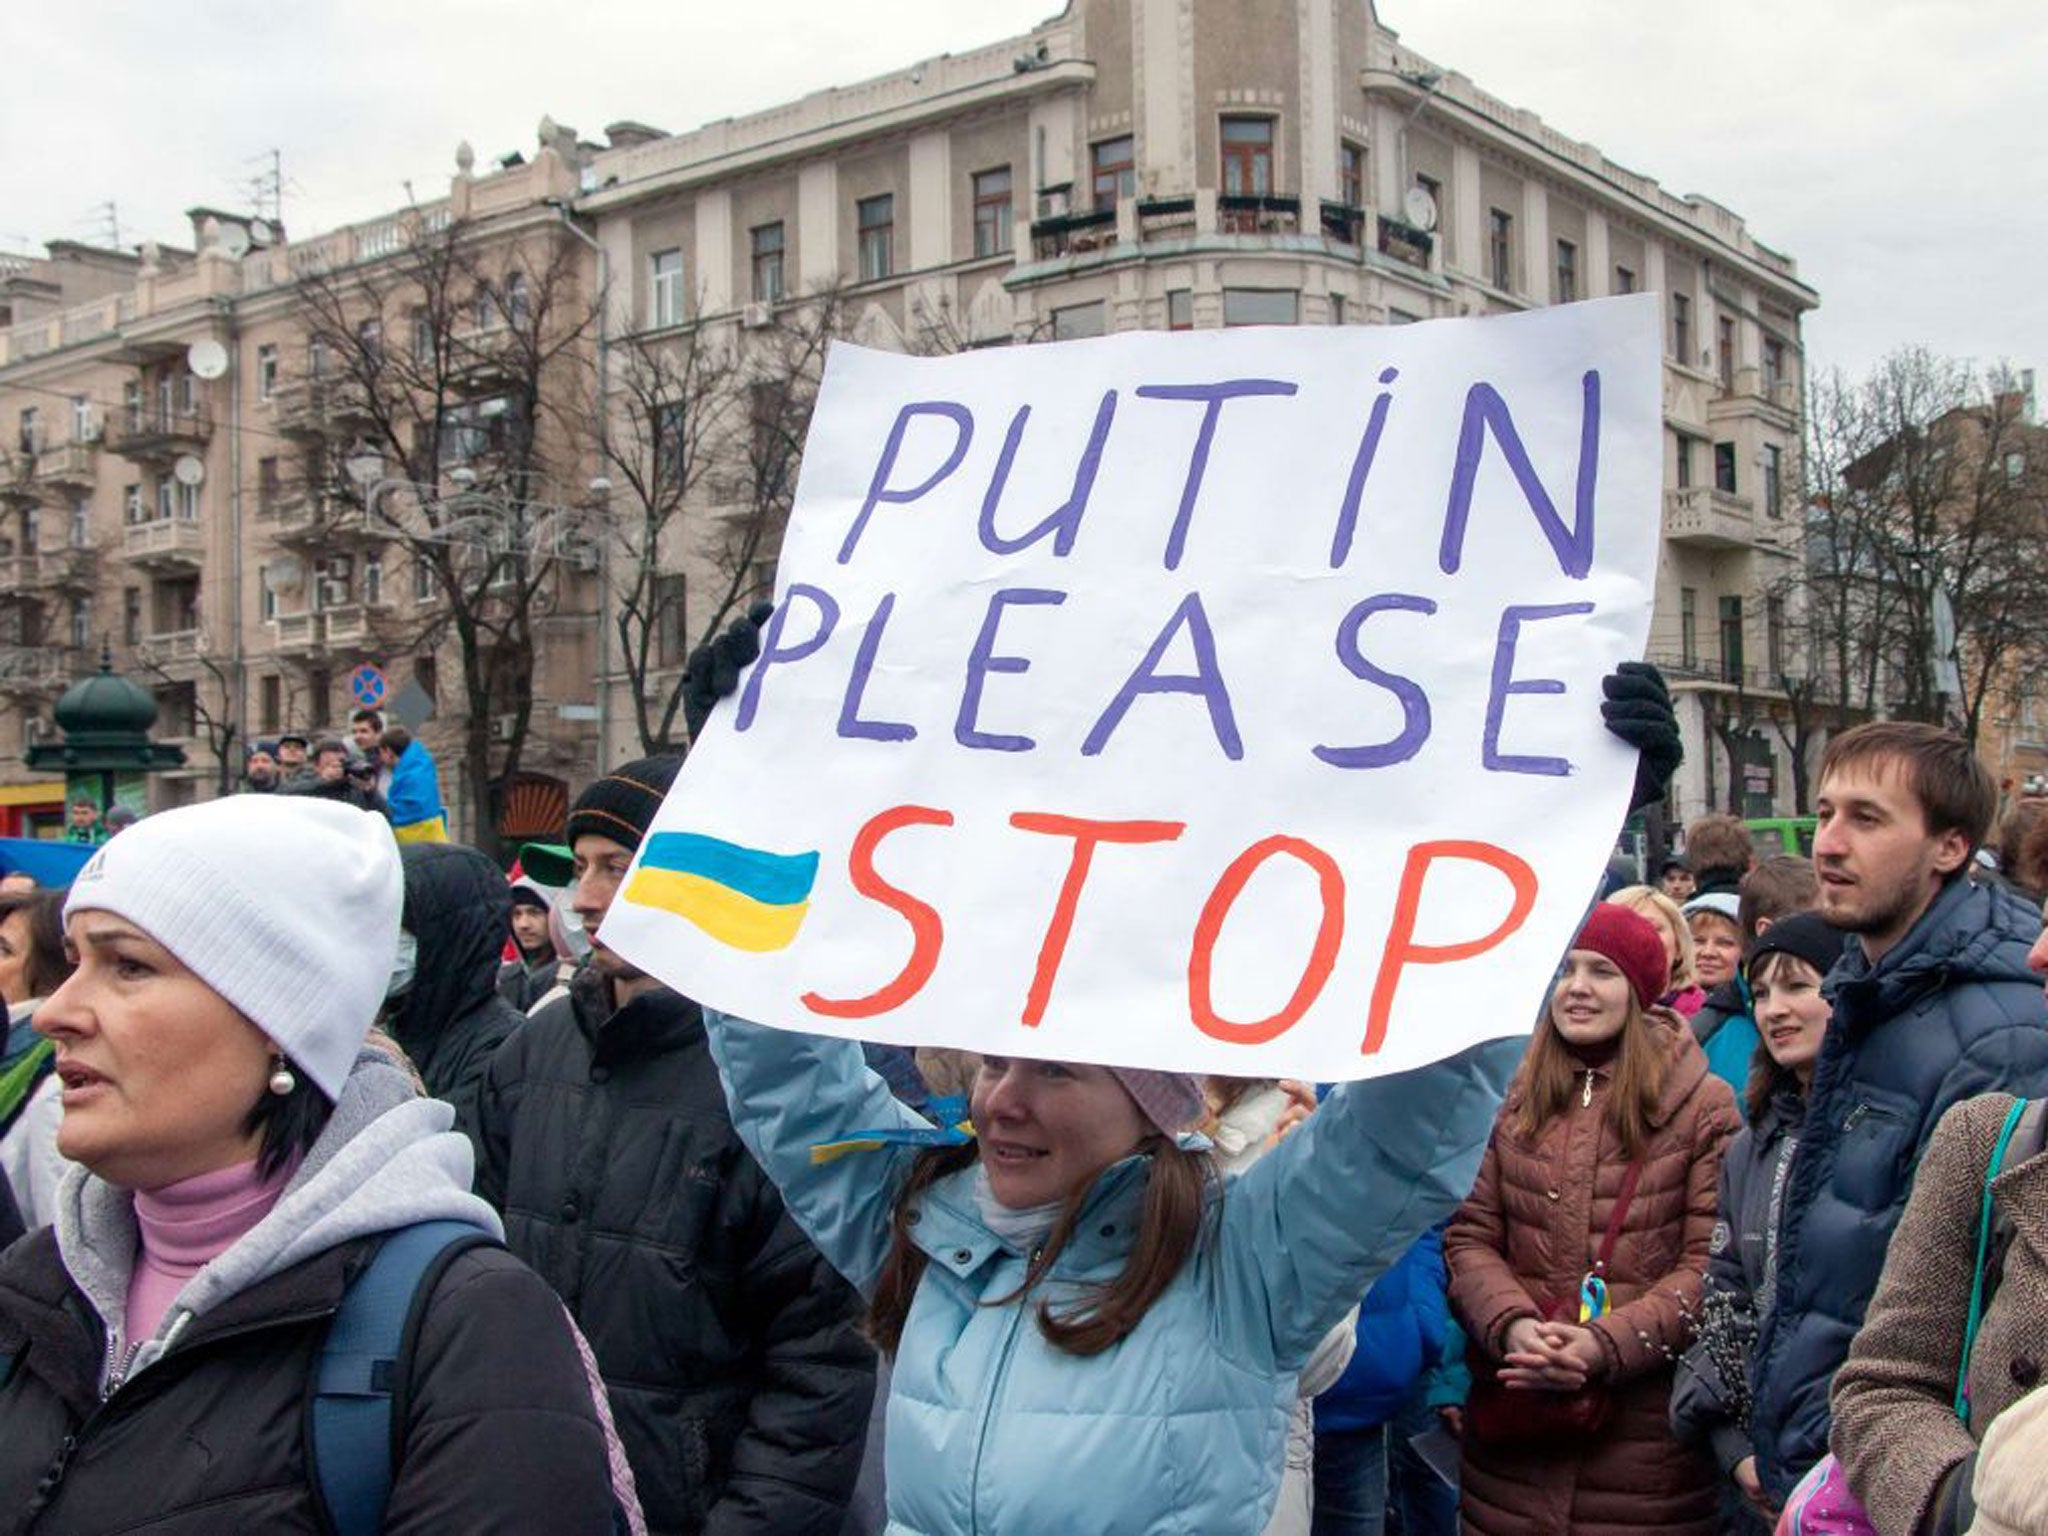 An anti-Russian demonstration held in Kharkiv, Ukraine last week